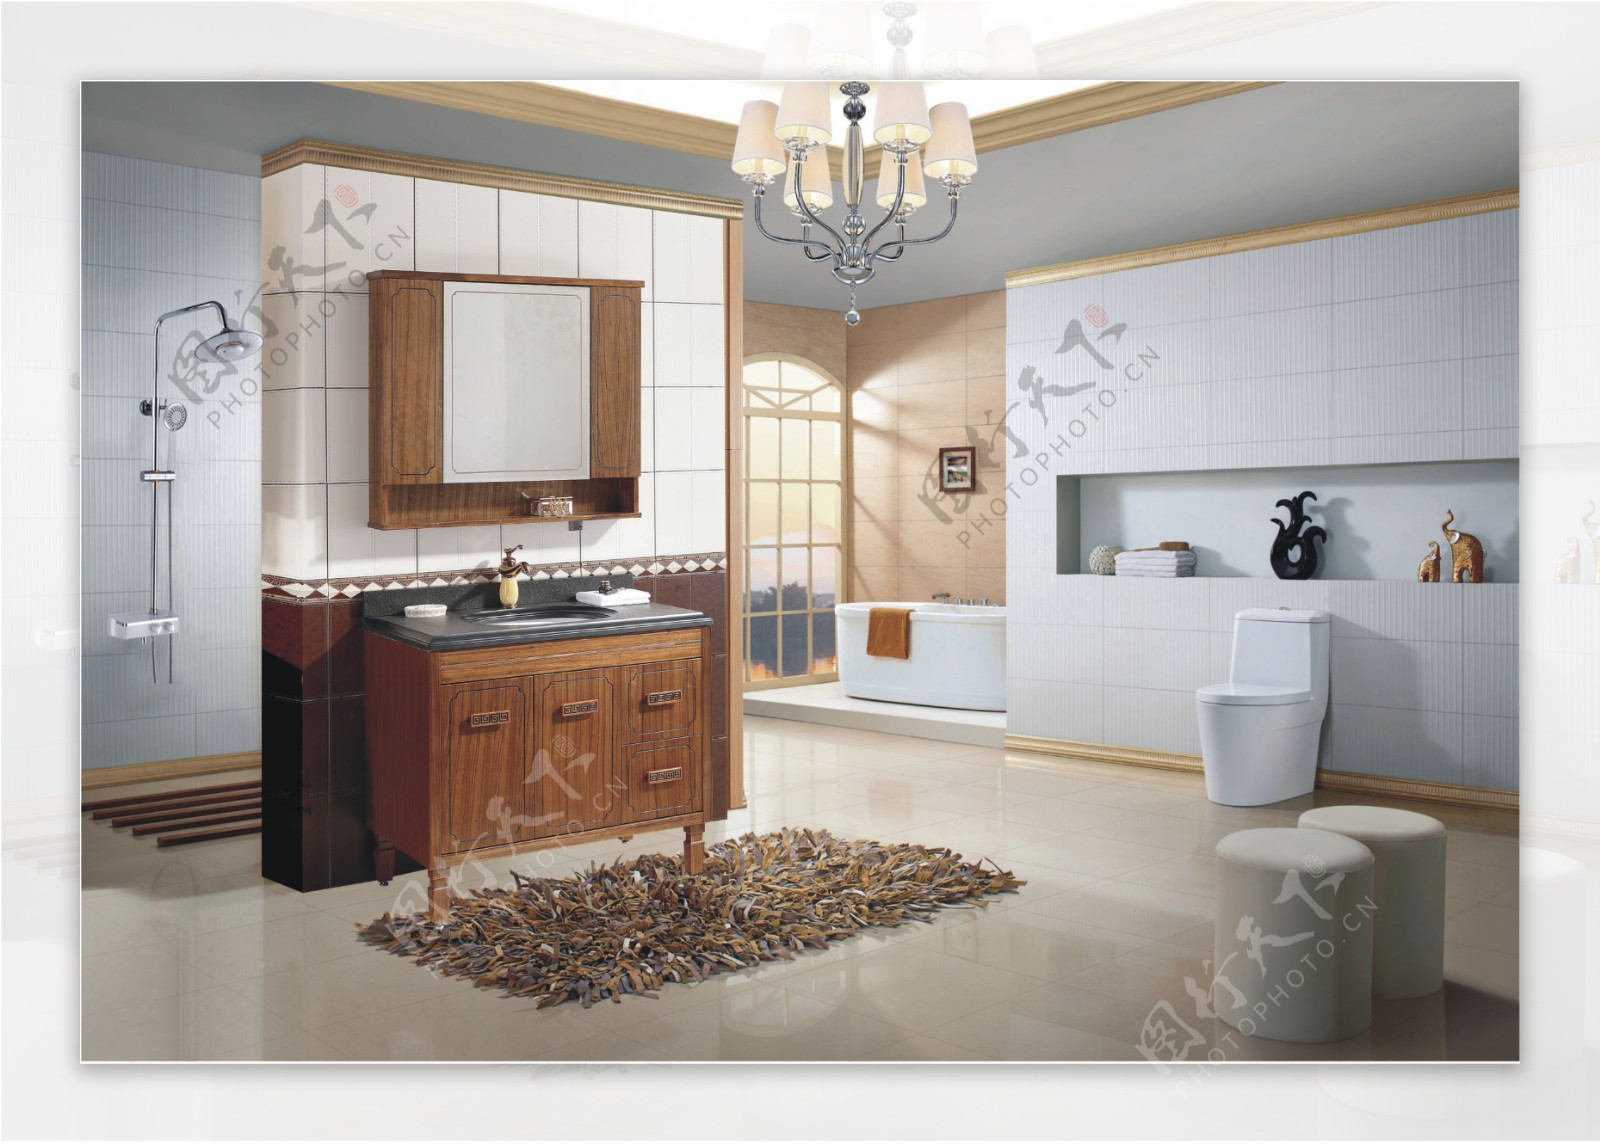 大气简洁欧式整体卫浴家装效果图设计